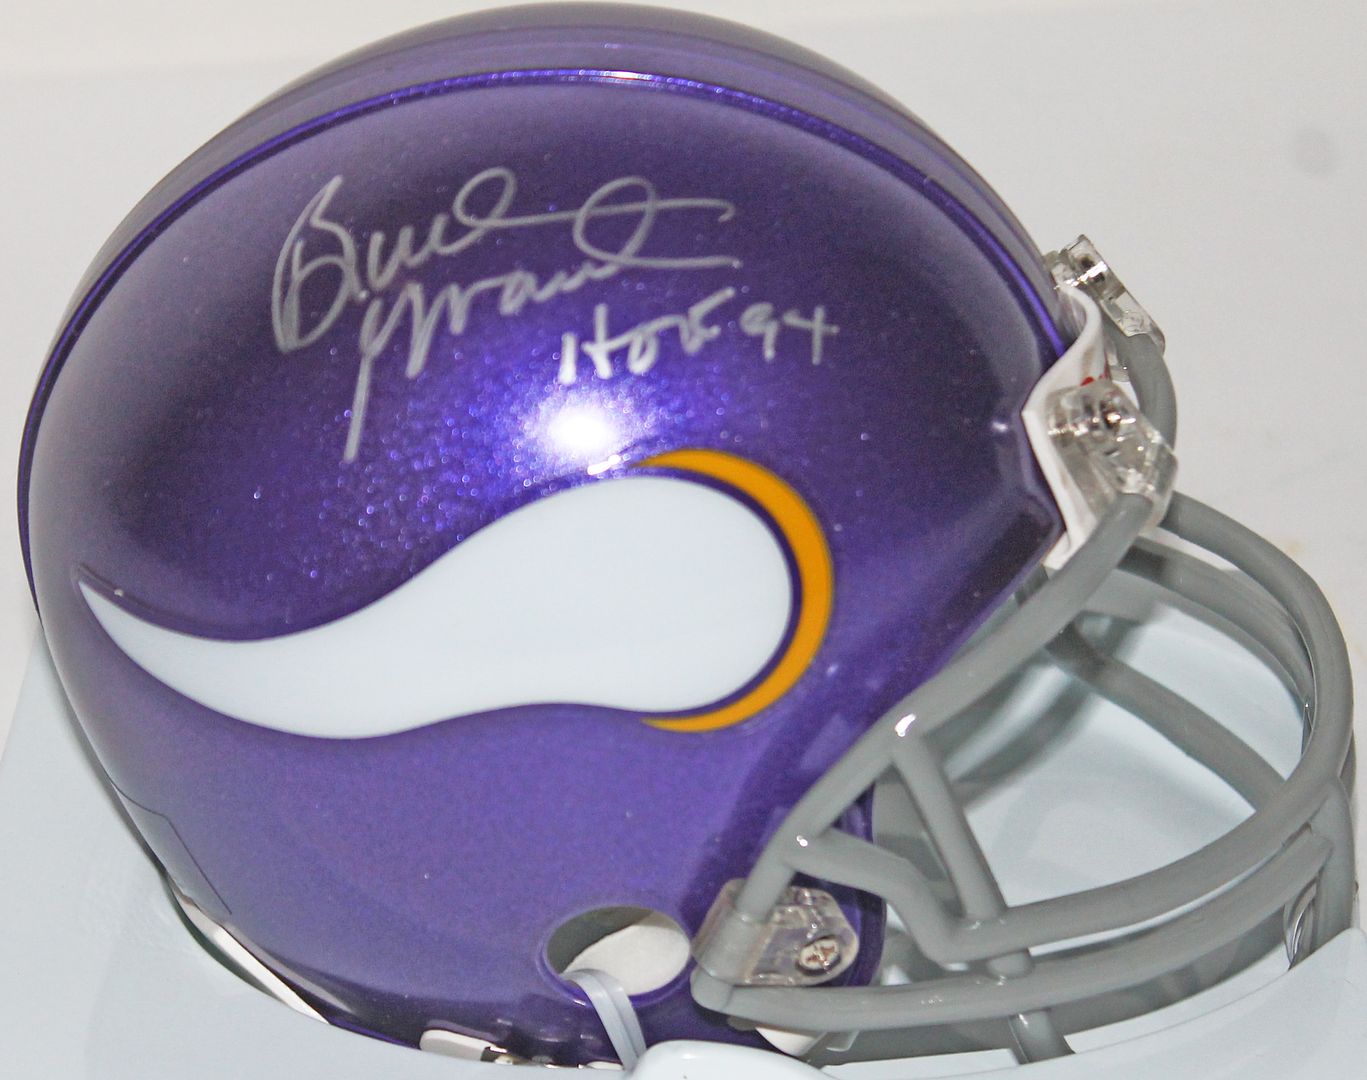 Vikings Bud Grant "HOF 94" Authentic Signed Mini Helmet Autographed PSA DNA